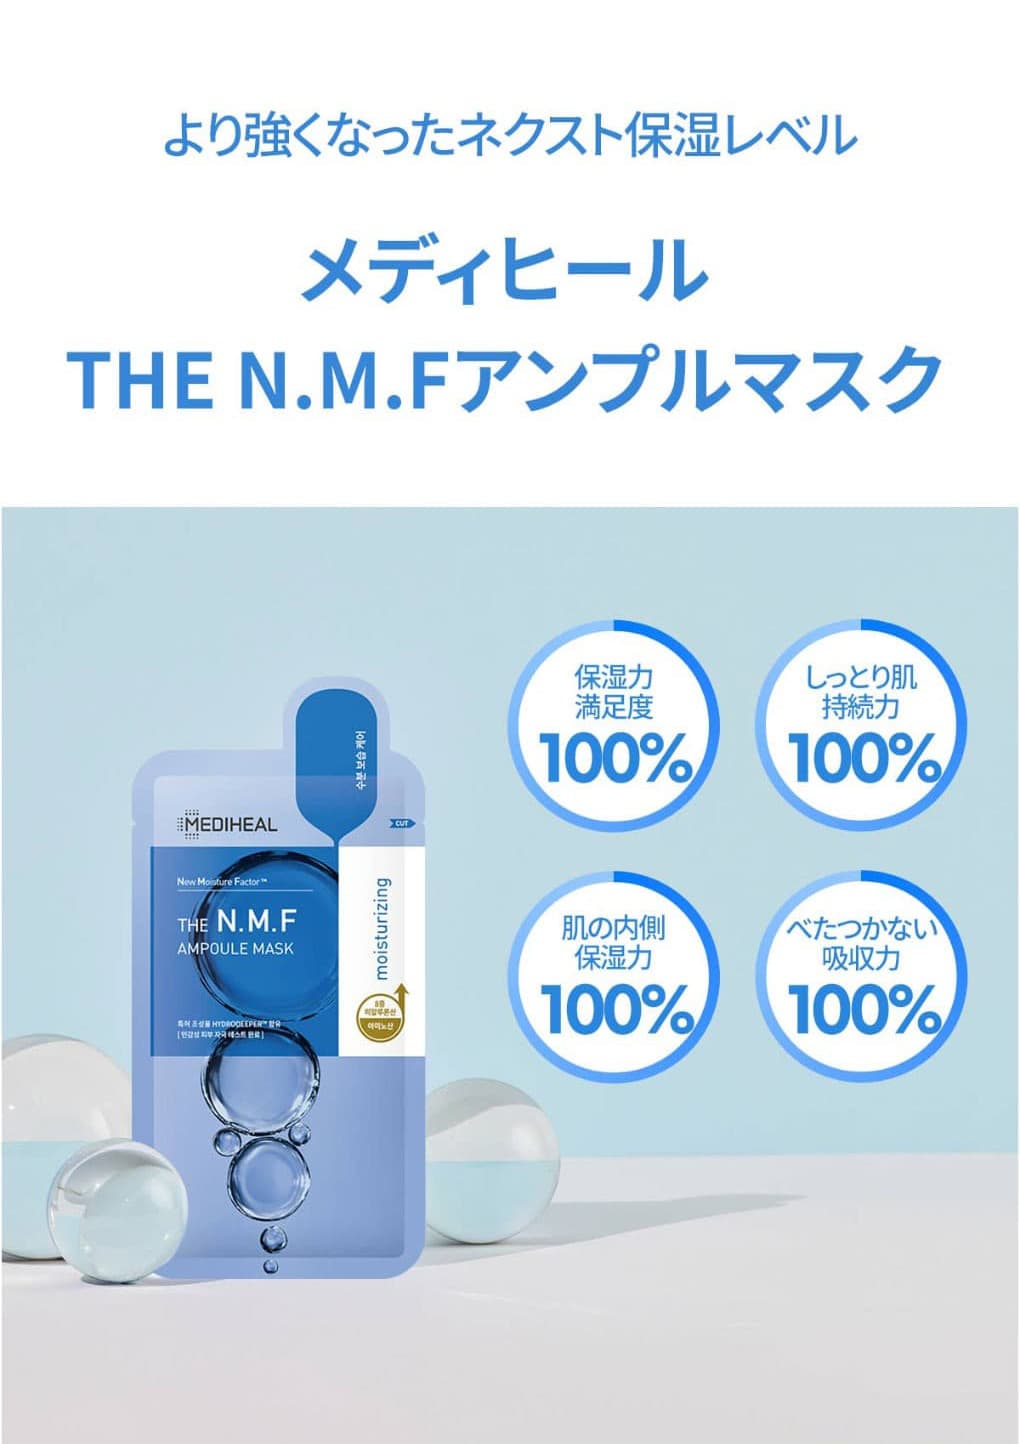  【MEDIHEAL】THE N.M.F アンプルマスク (1枚) 　韓国マスクパック　メディヒール